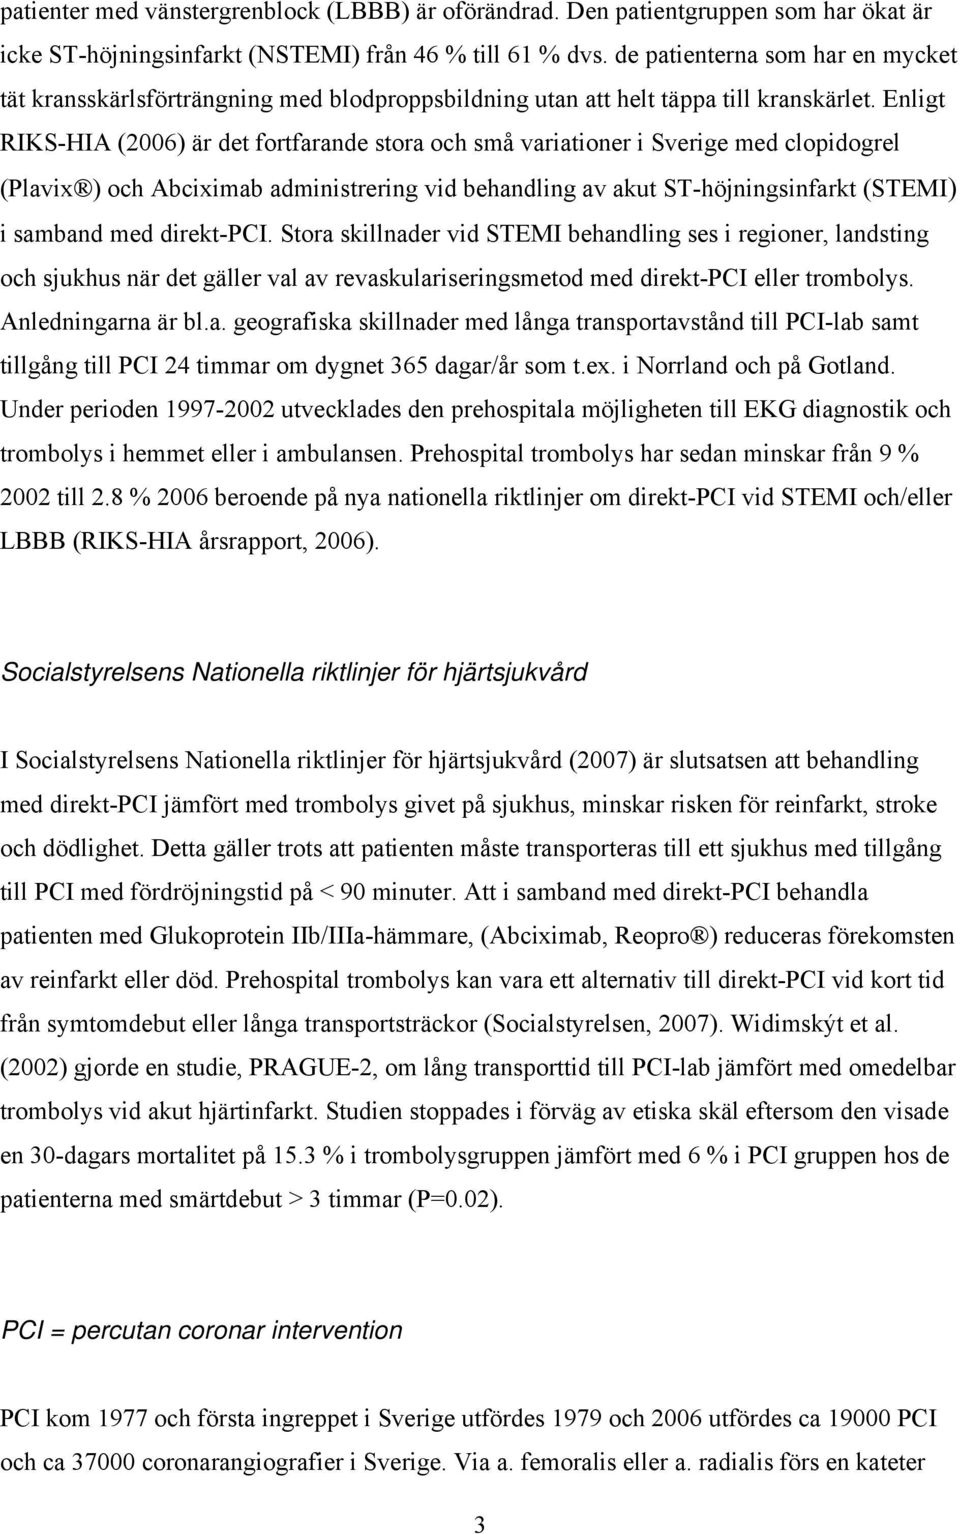 Enligt RIKS-HIA (2006) är det fortfarande stora och små variationer i Sverige med clopidogrel (Plavix ) och Abciximab administrering vid behandling av akut ST-höjningsinfarkt (STEMI) i samband med